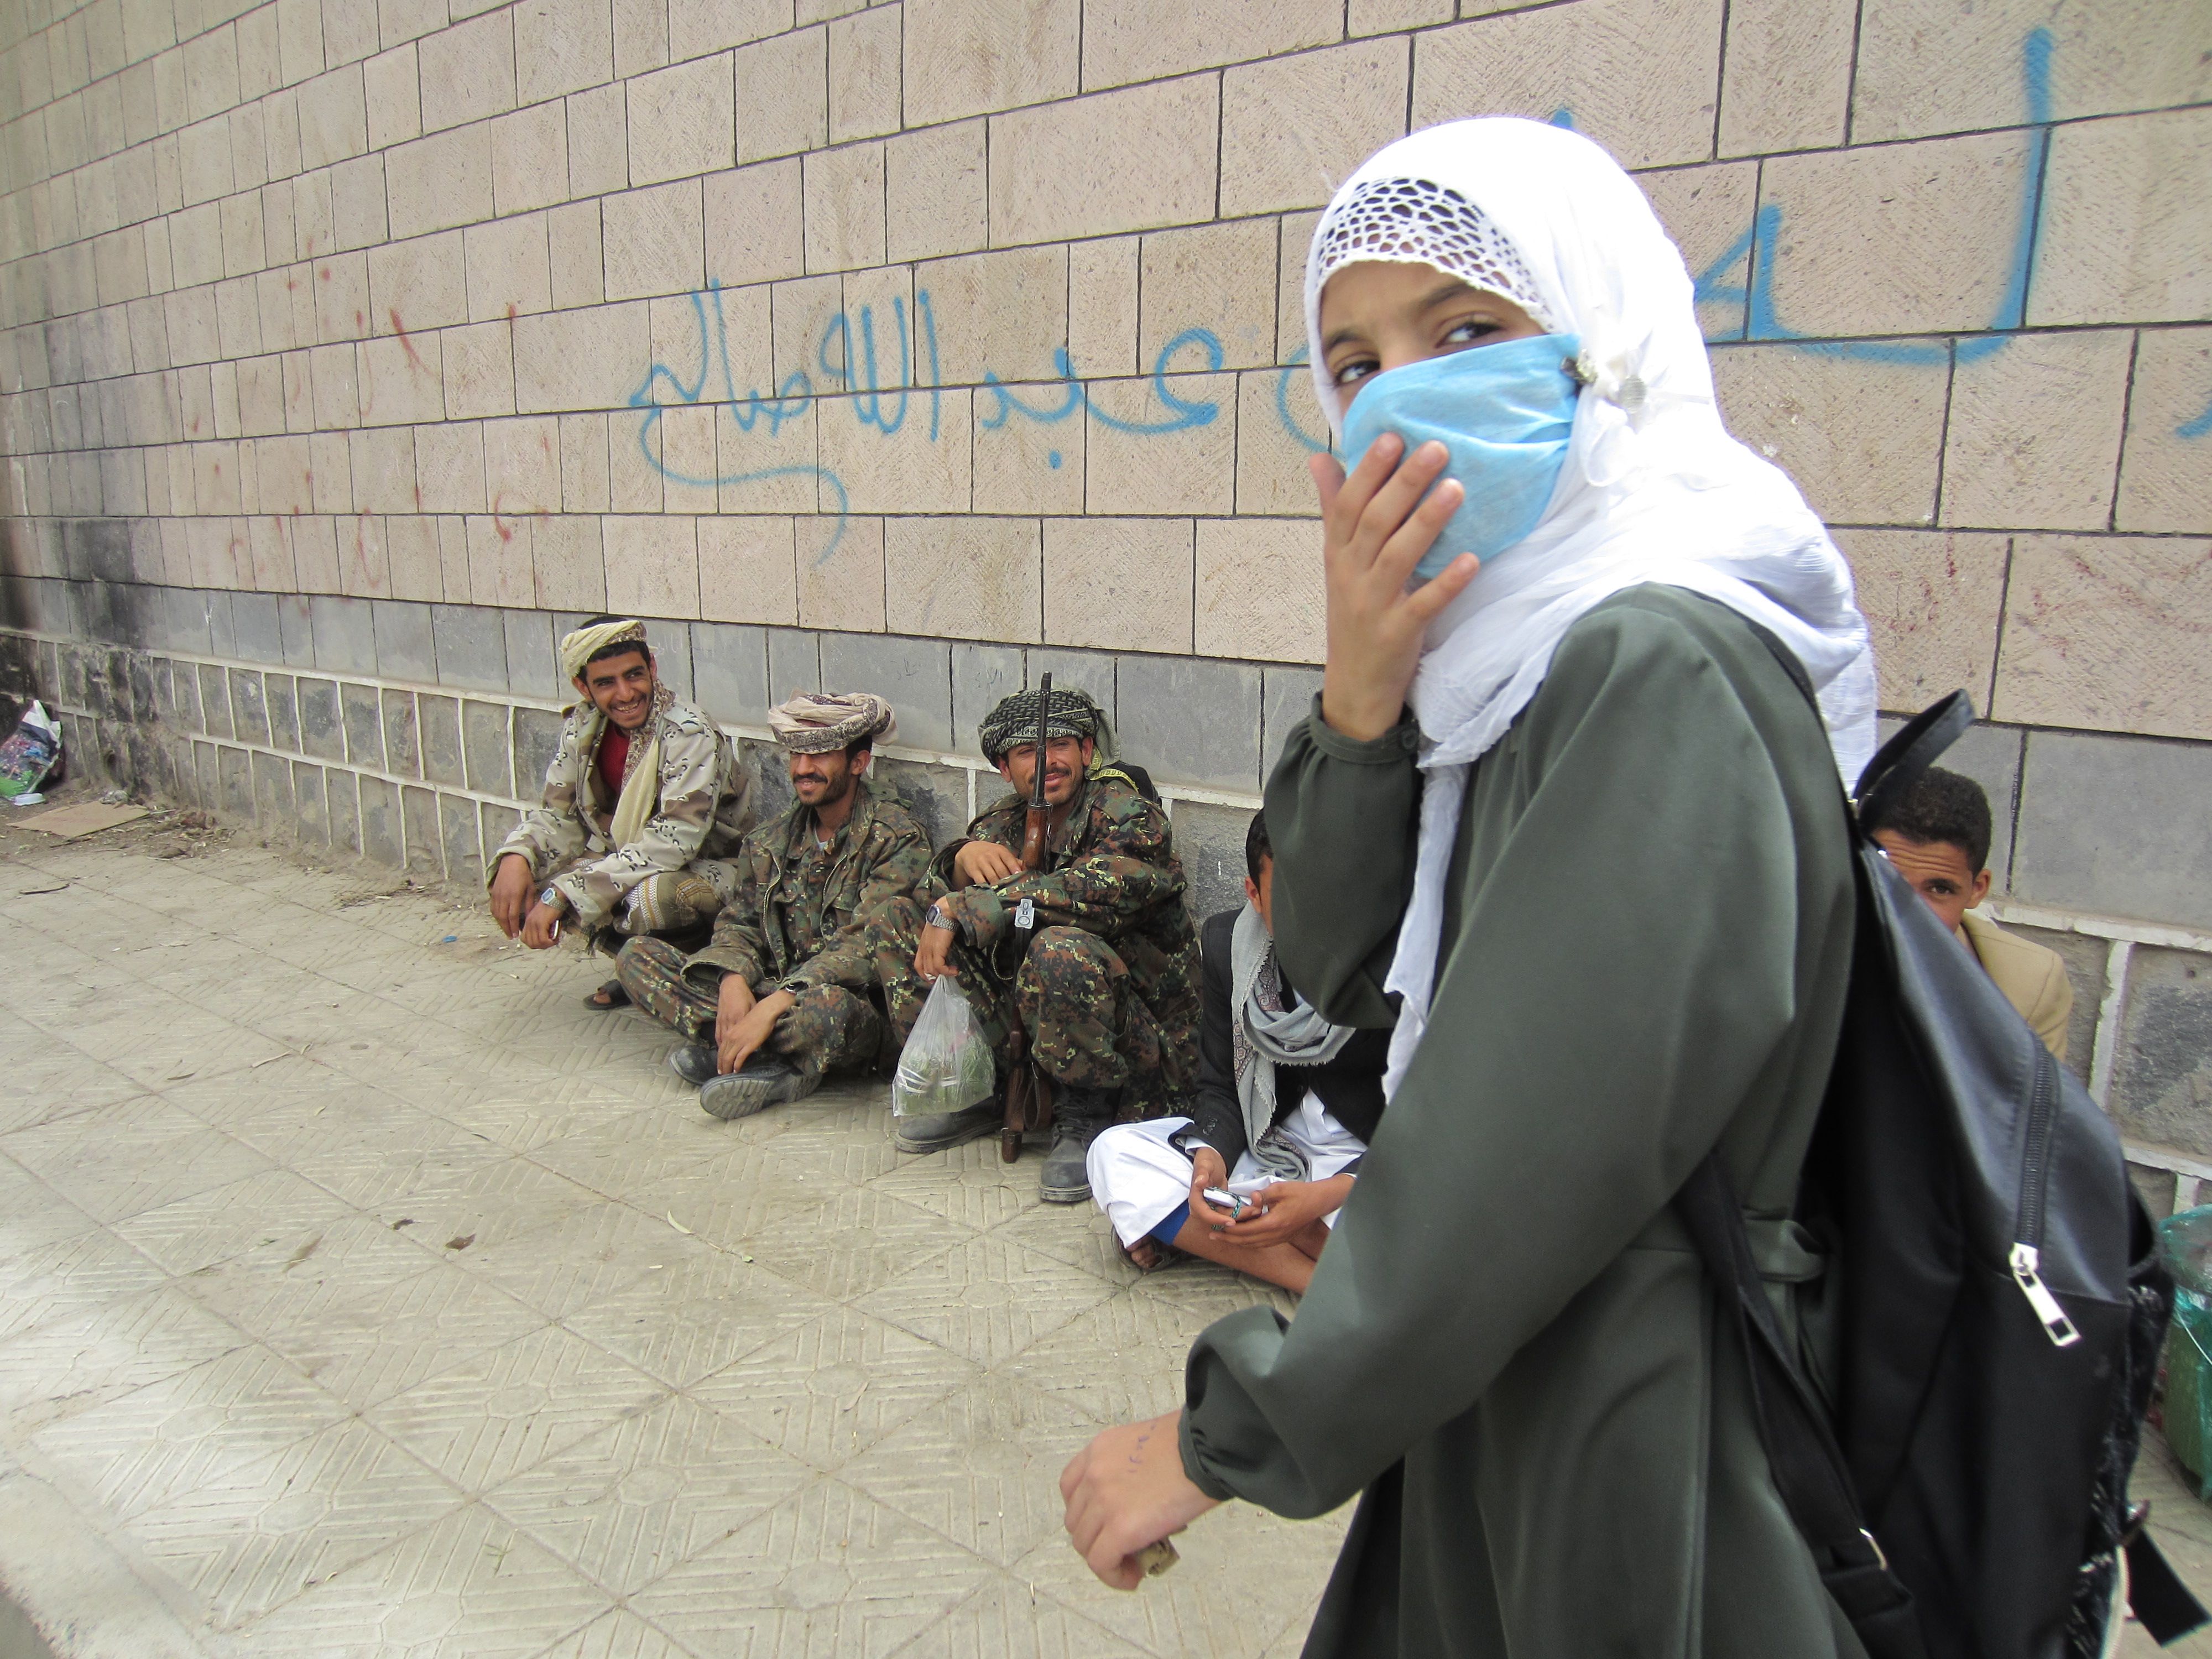 yemen armies in schools